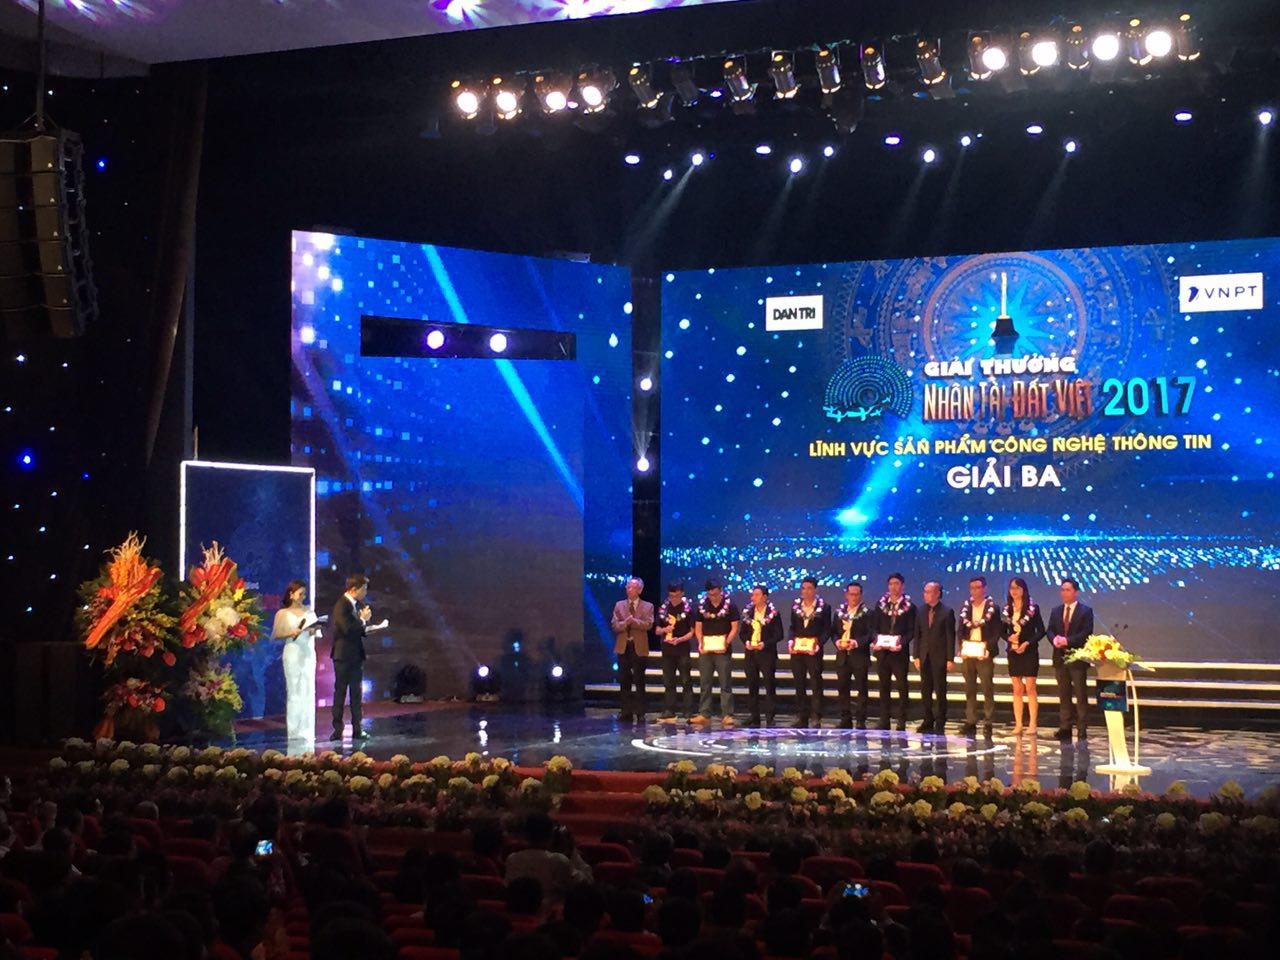 GOnJOY và các nhóm lên nhân giải Ba của Nhân tài Đất Việt 2017